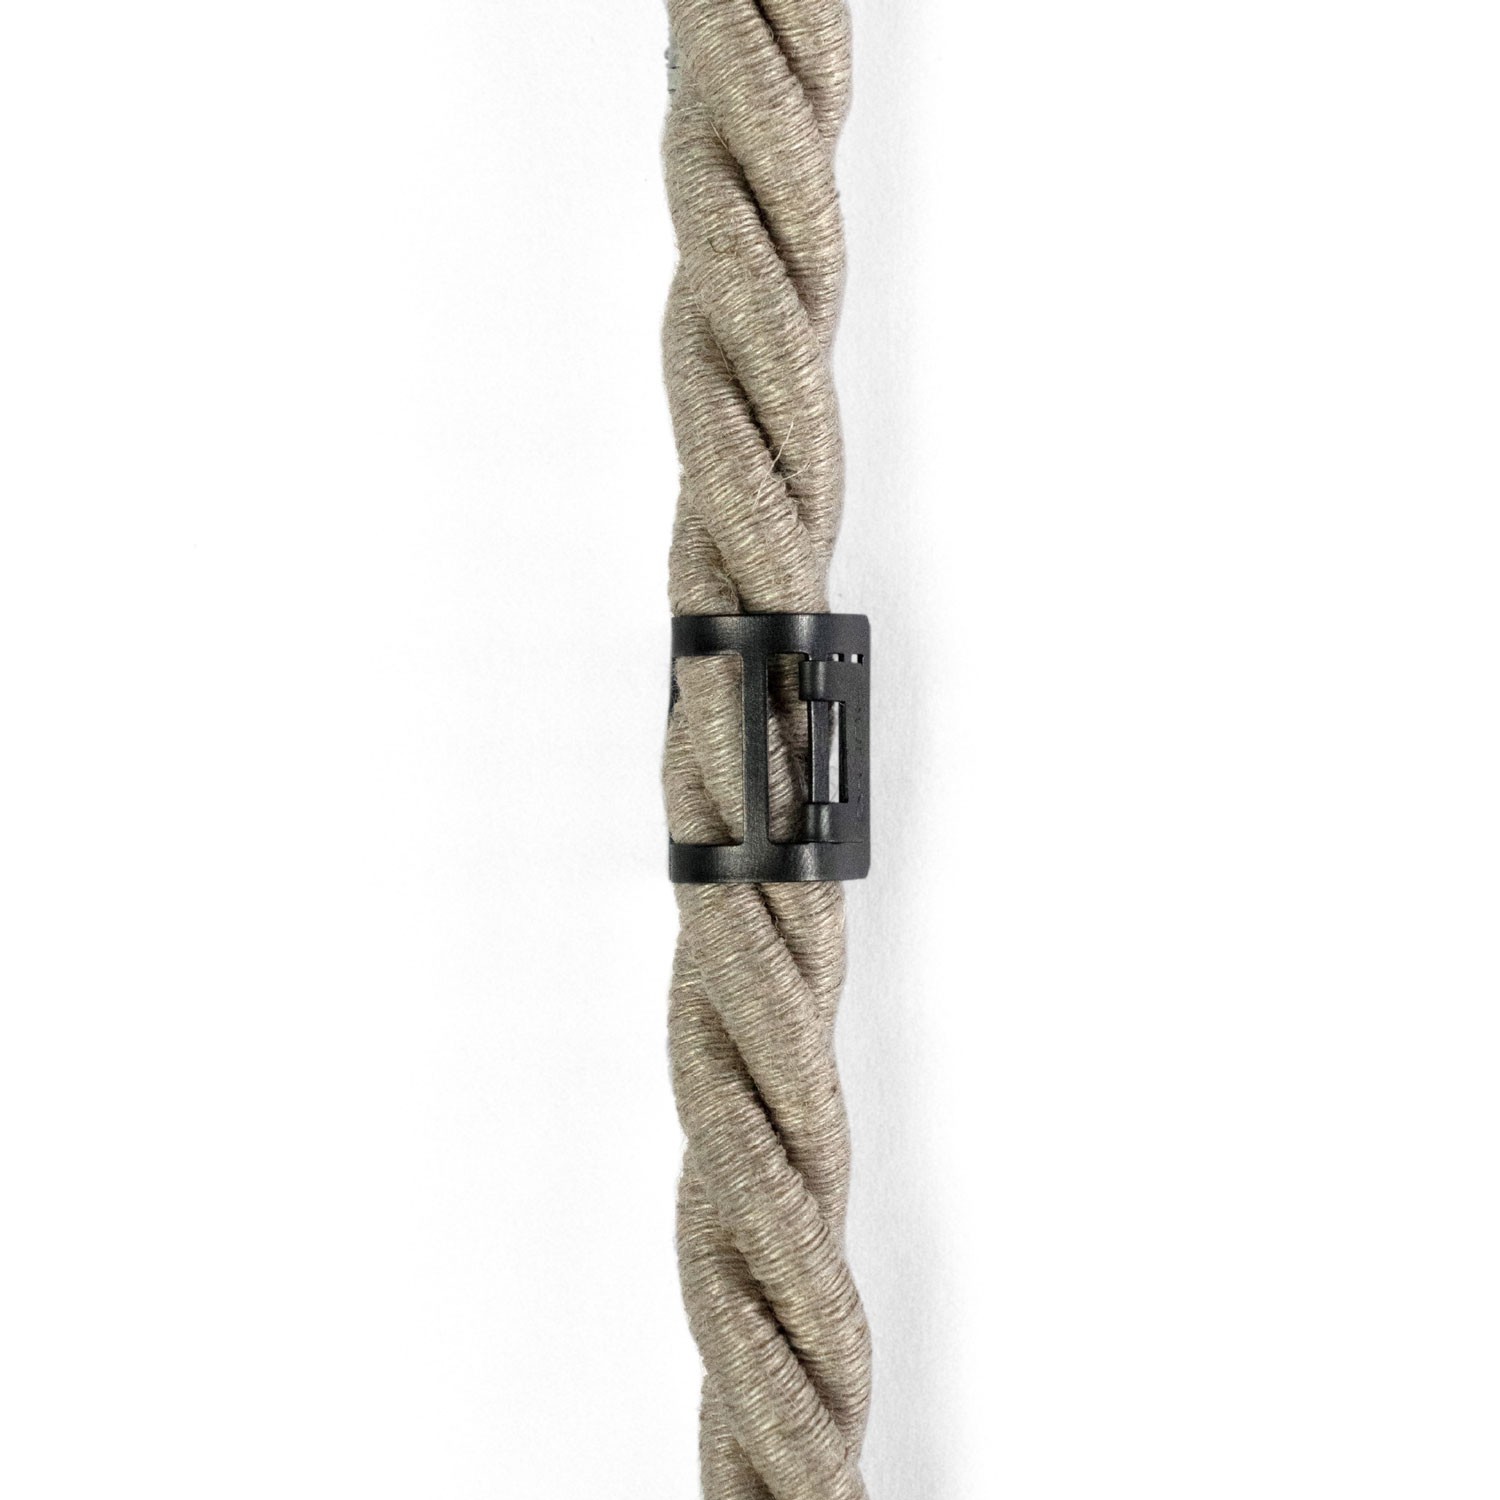 Kovinska sponka za električne vrvi premera 16mm.